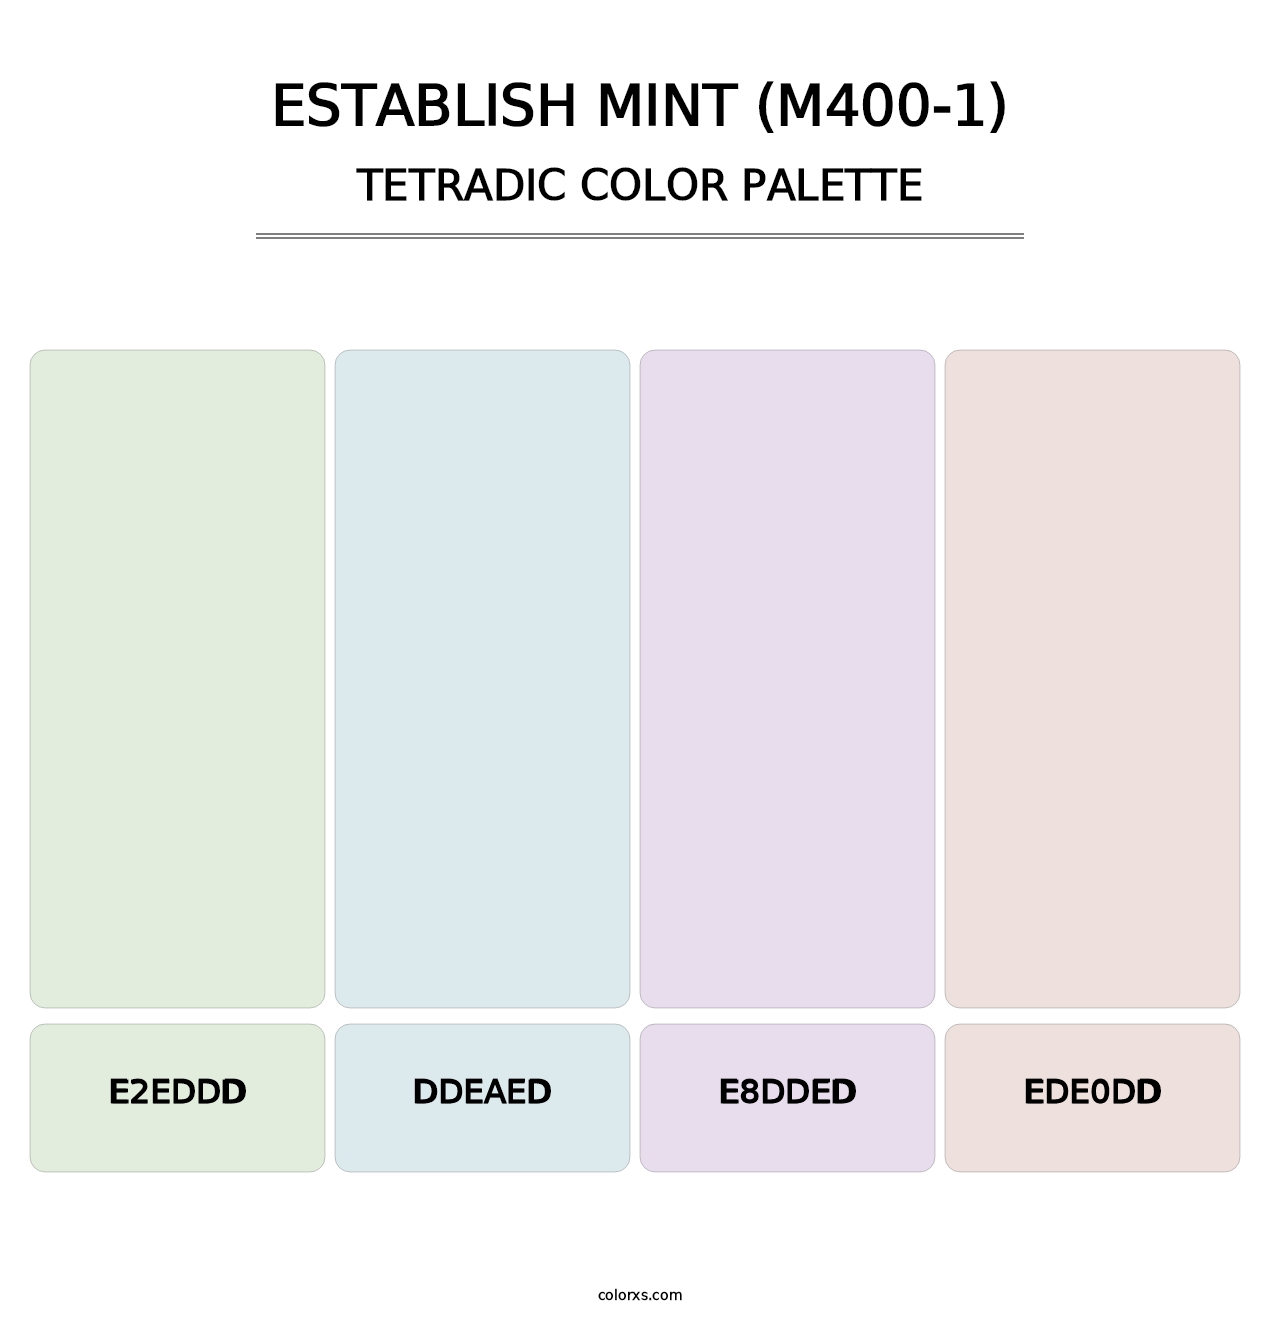 Establish Mint (M400-1) - Tetradic Color Palette